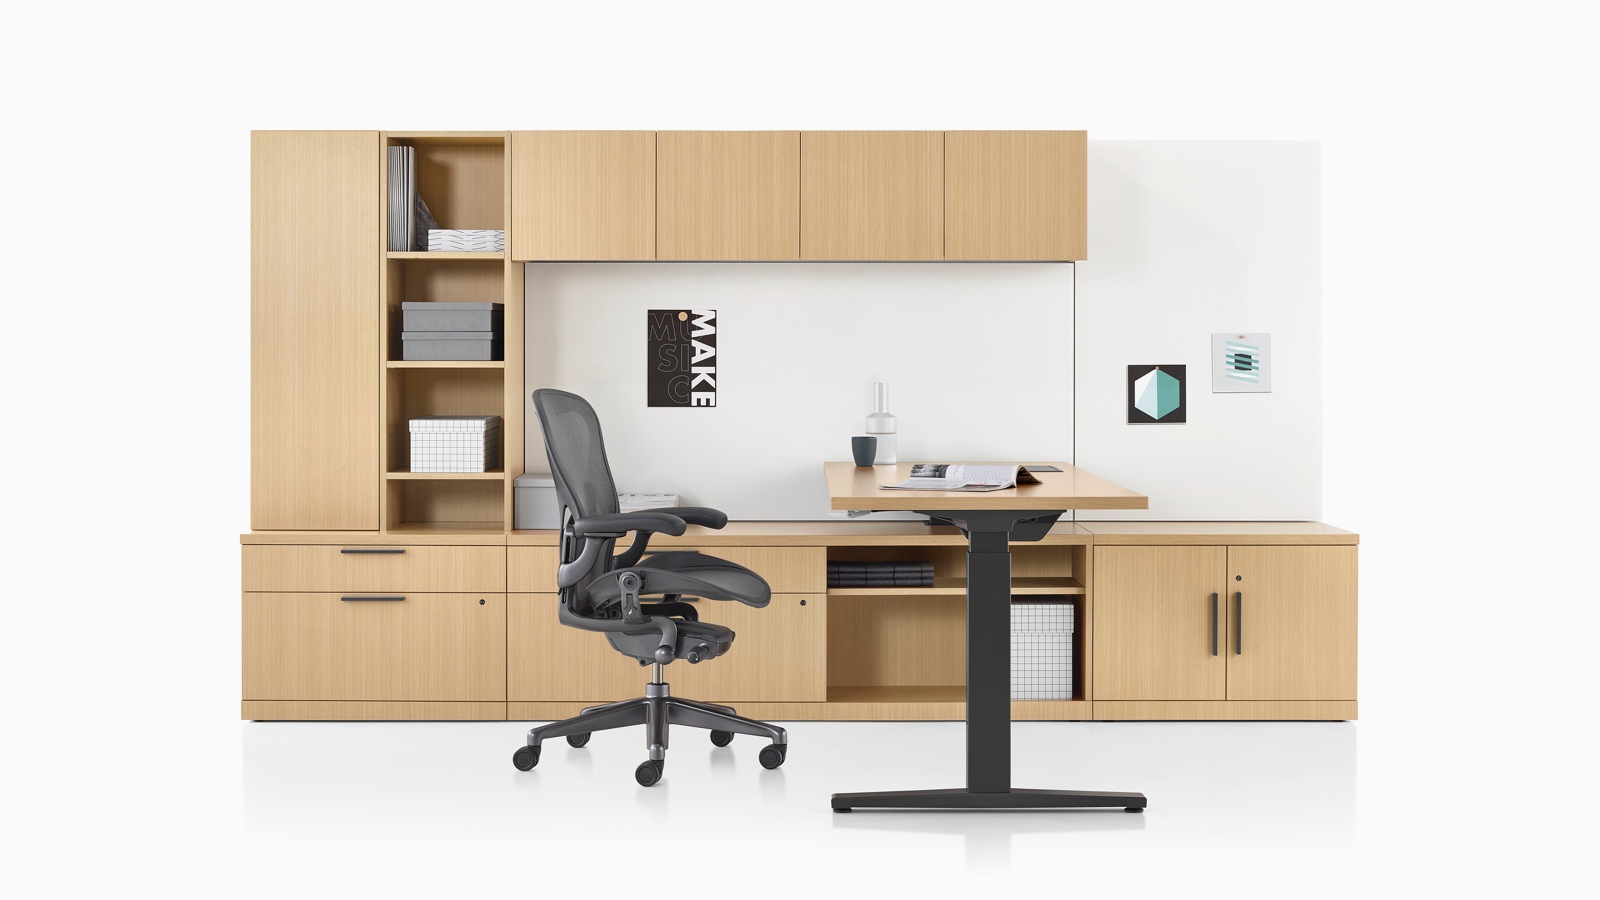 Canvas Private Office con almacenamiento de madera clara, escritorio de altura ajustable, y silla para oficinas Aeron negra.